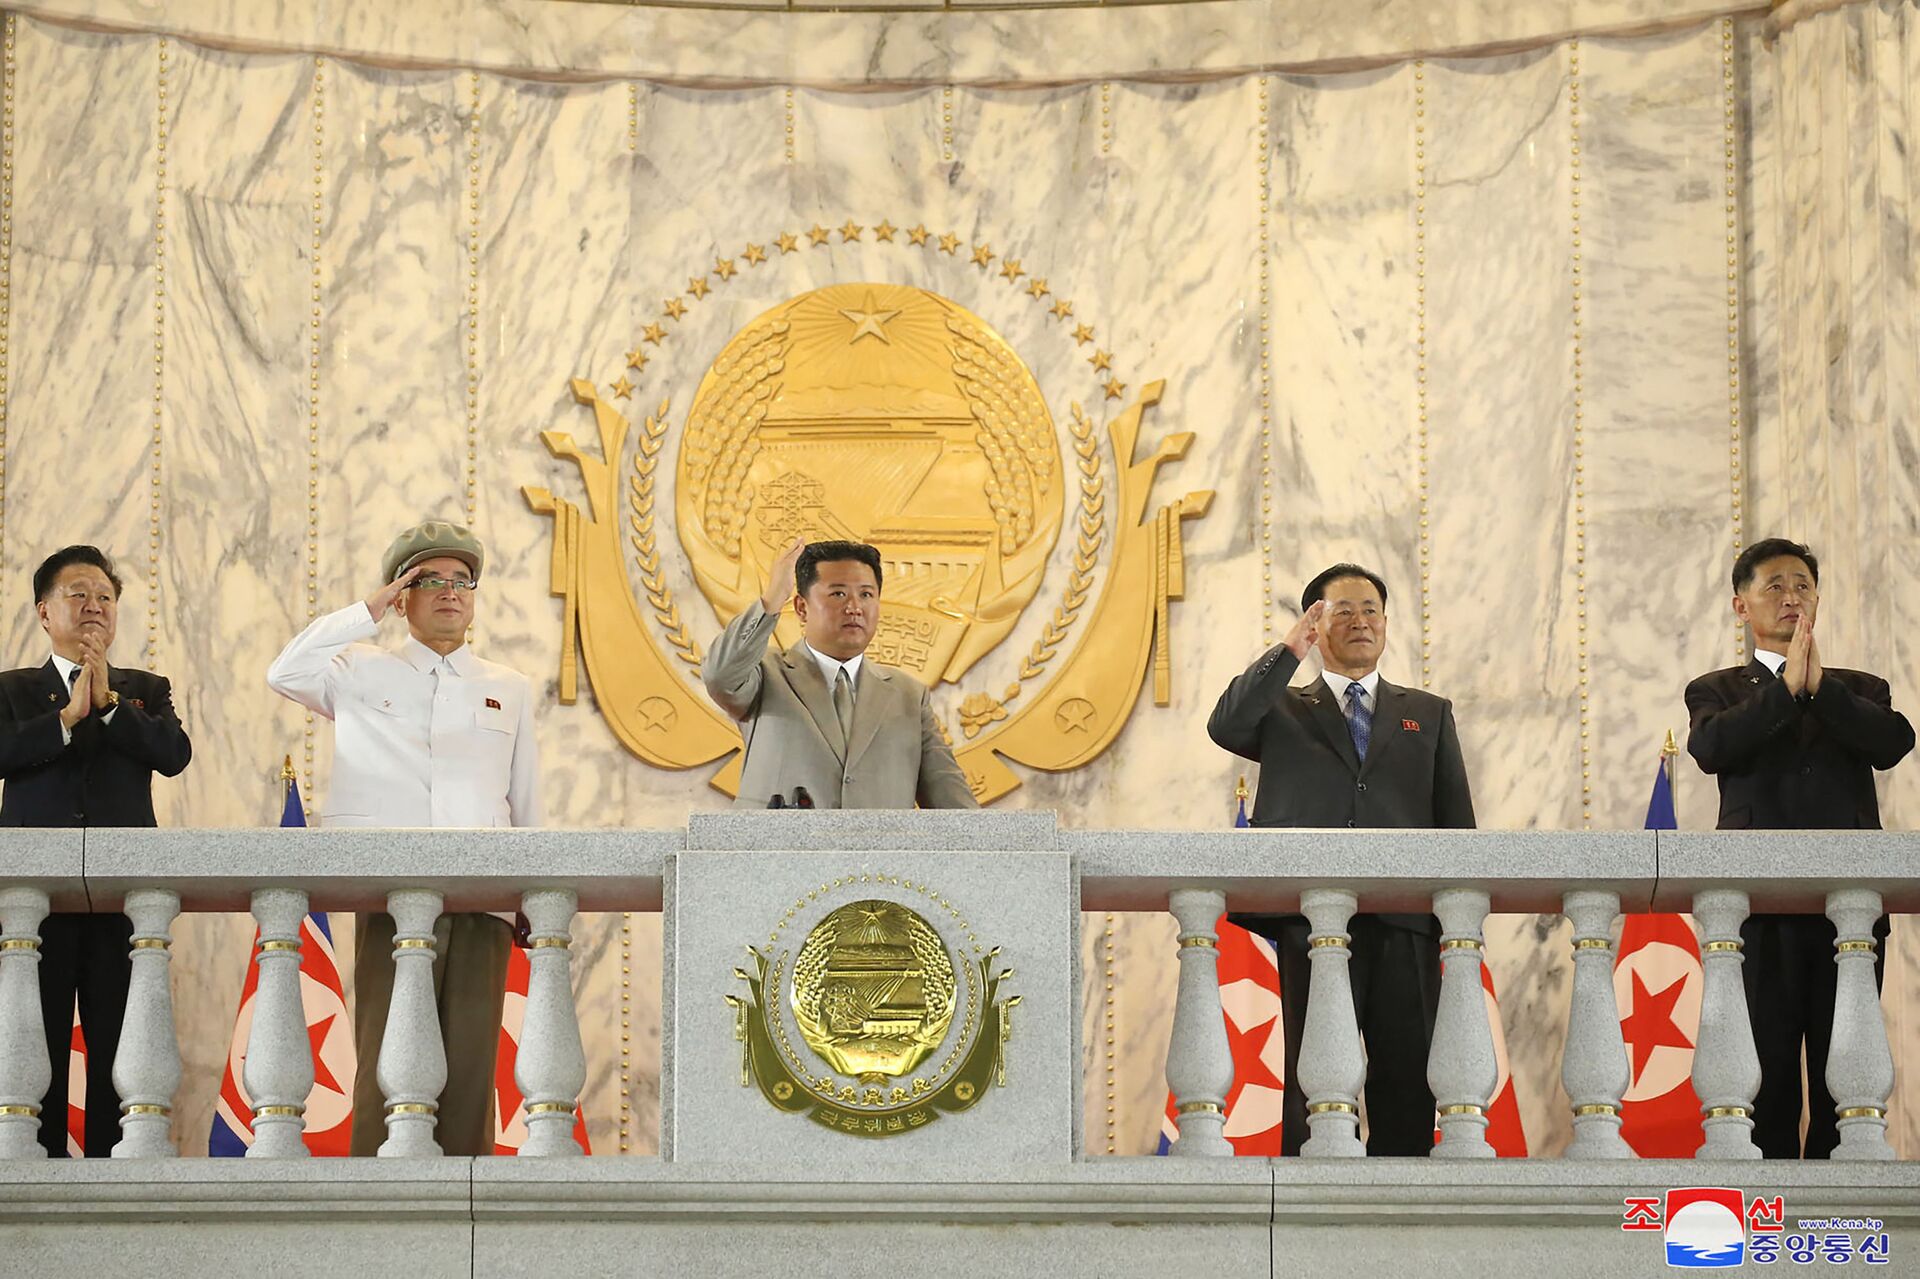  صورة نشرتها وكالة الأنباء المركزية الكورية الرسمية، وتظهر الزعيم الكوري الشمالي كيم جونغ أون يشارك في عرض عسكري للاحتفال بالذكرى الـ 73 لتأسيسها في بيونغ يانغ، 9 سبتمبر/ أيلول 2021 - سبوتنيك عربي, 1920, 23.11.2021